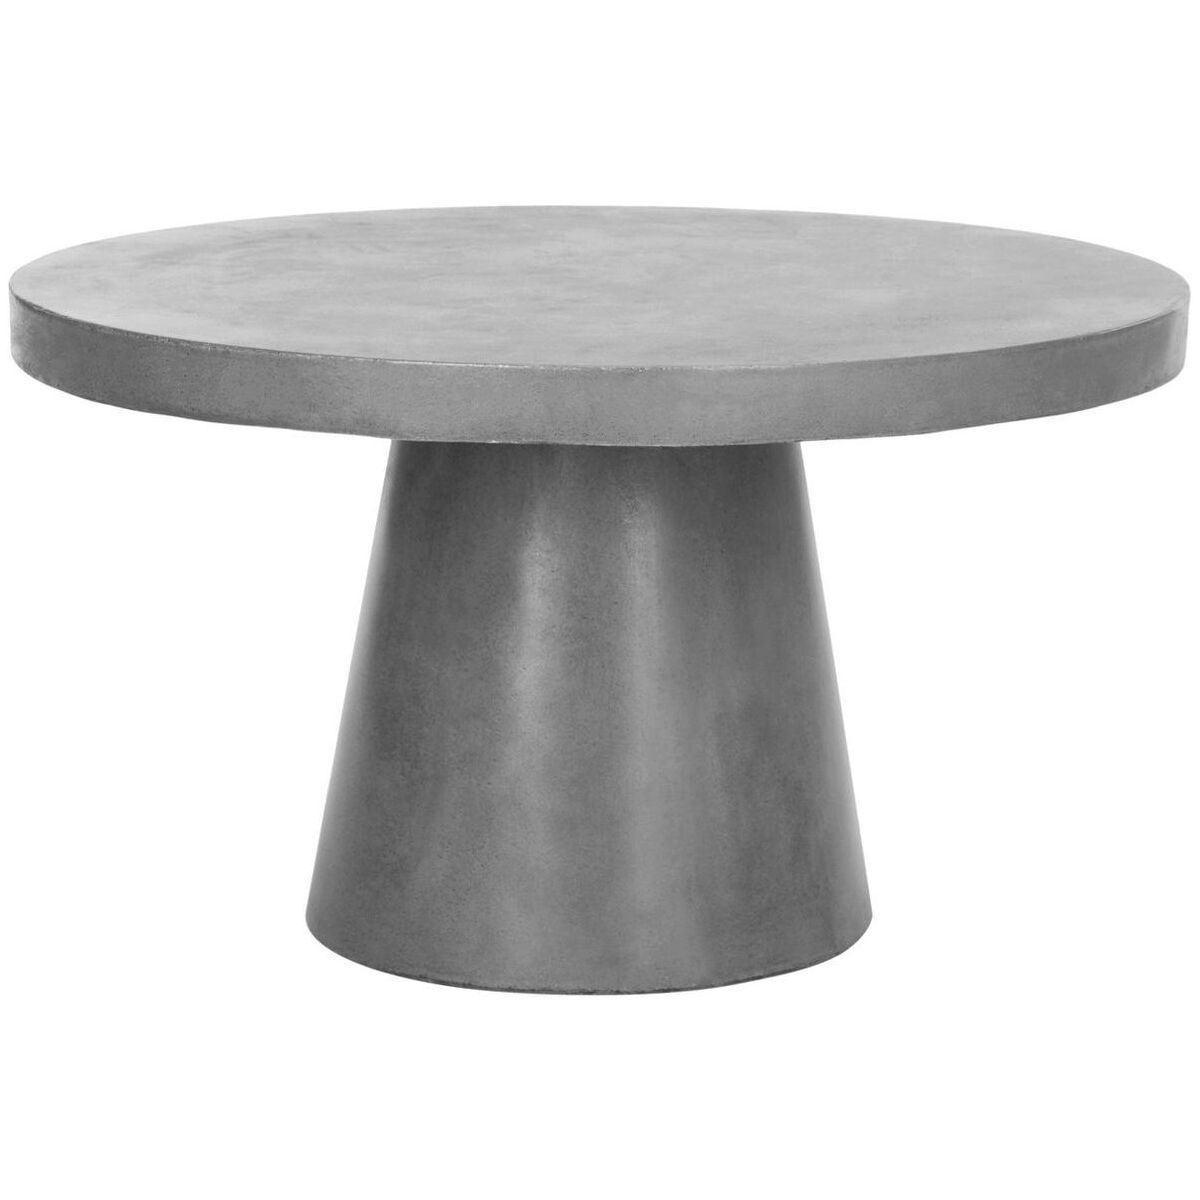 Delfia Concrete Round Indoor/Outdoor Coffee Table - Dark Grey - Safavieh. | Target